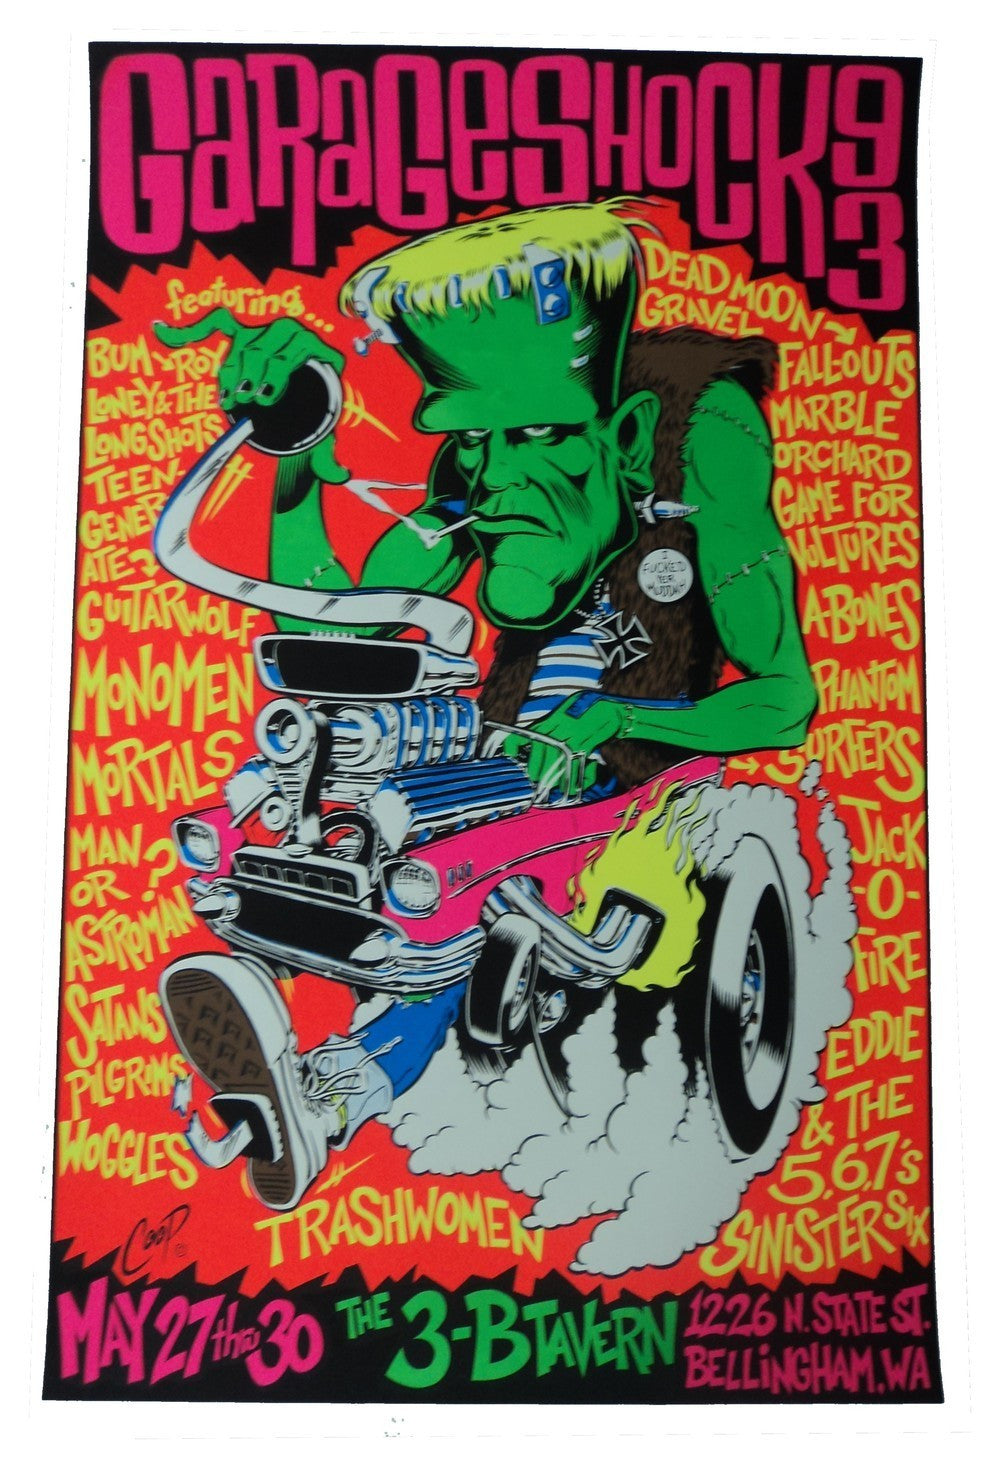 Coop - 1993 - Garage Shock Concert Poster